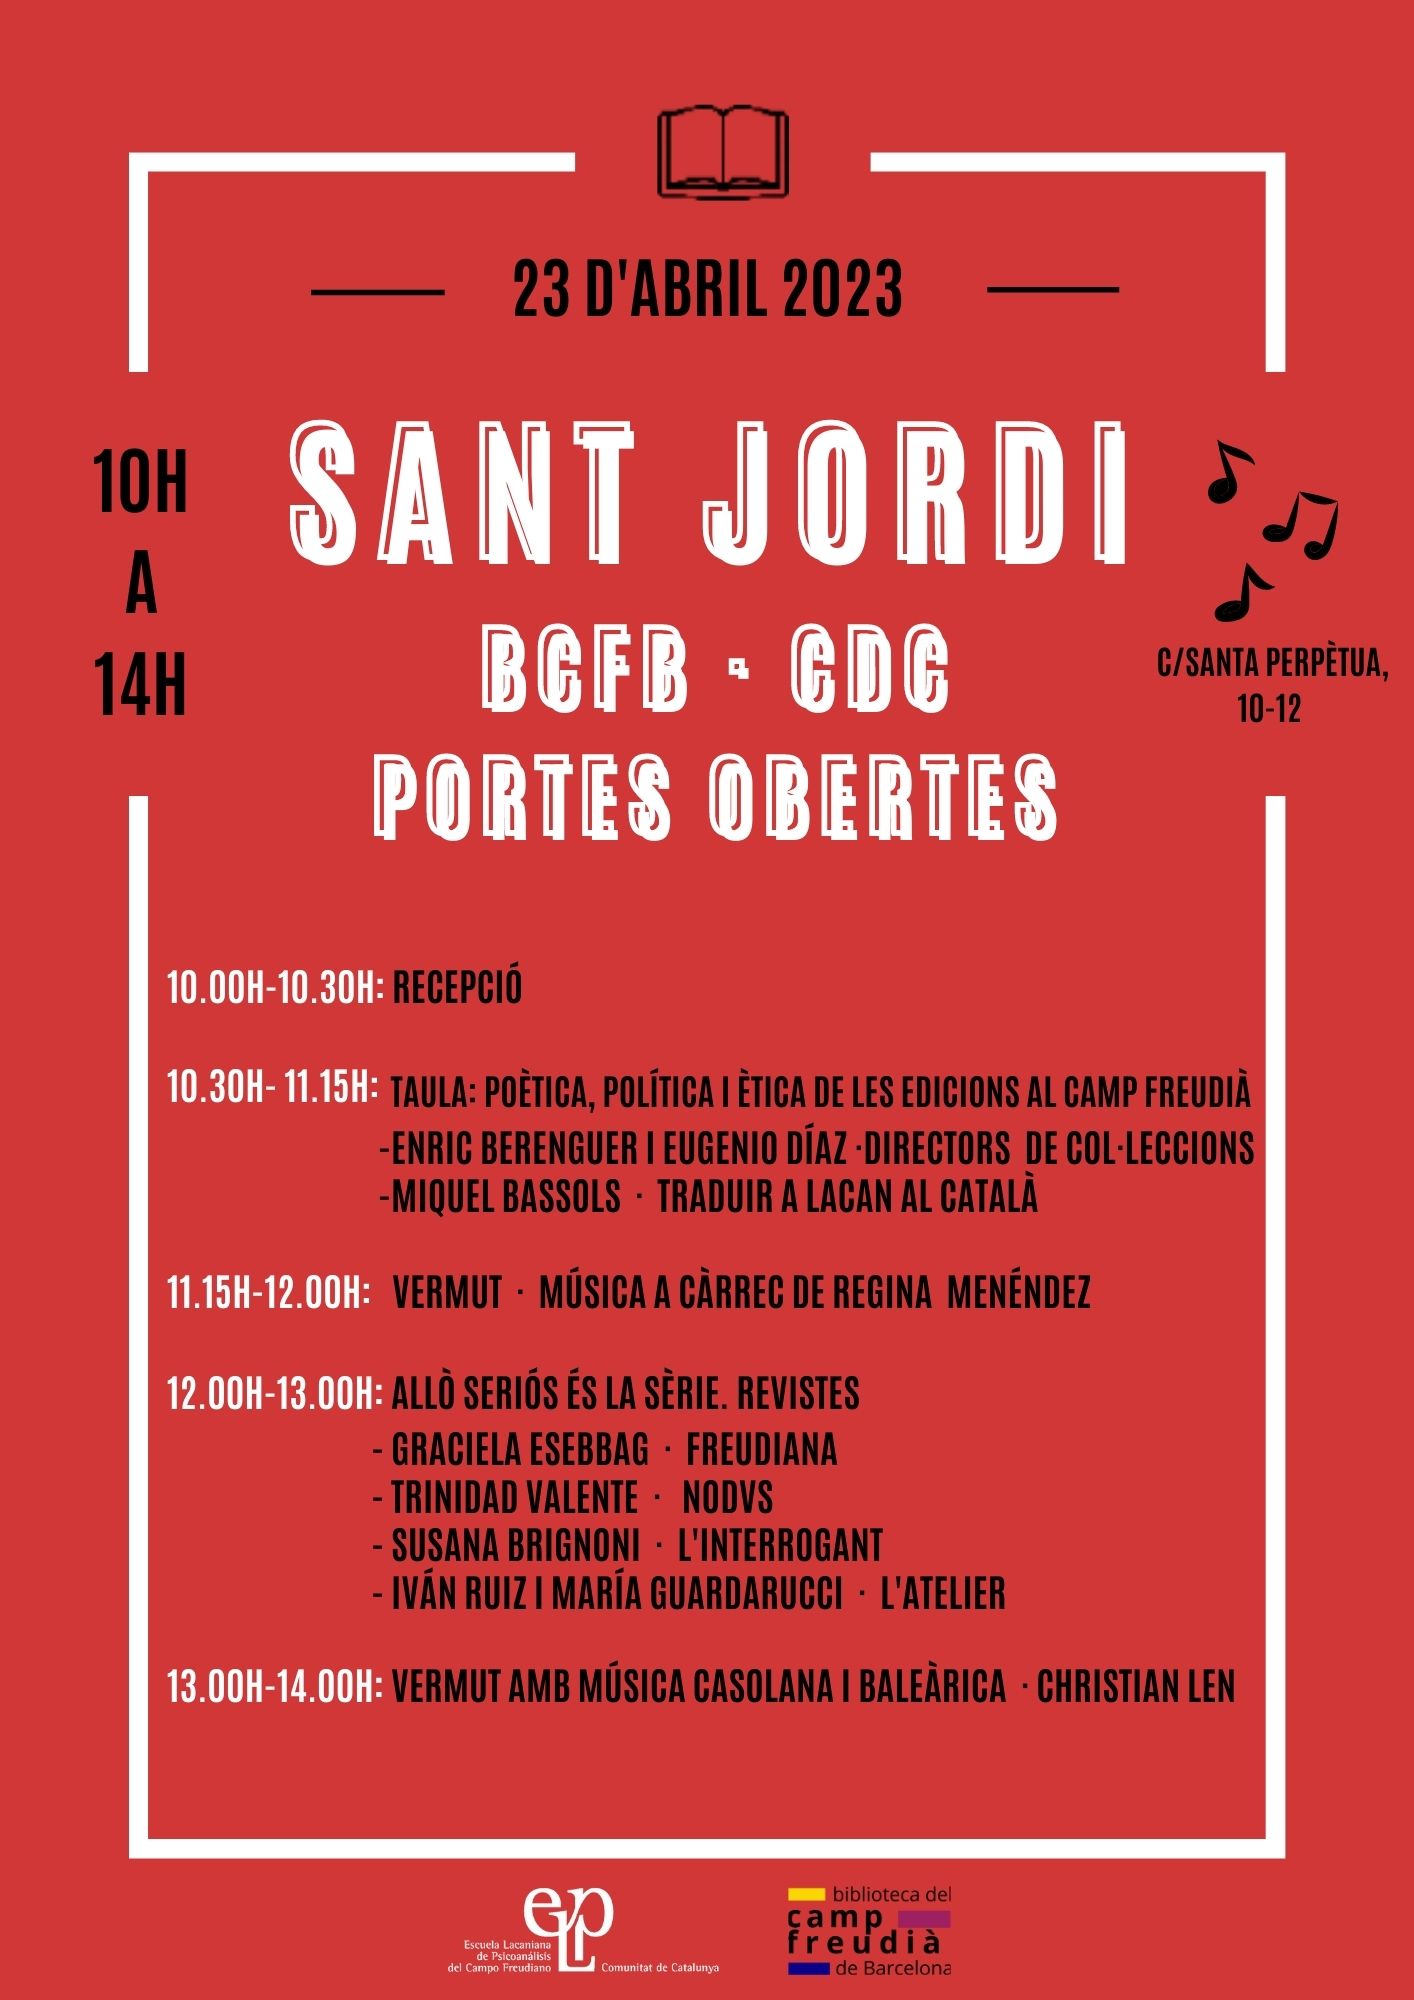 SANT JORDI - PORTES OBERTES